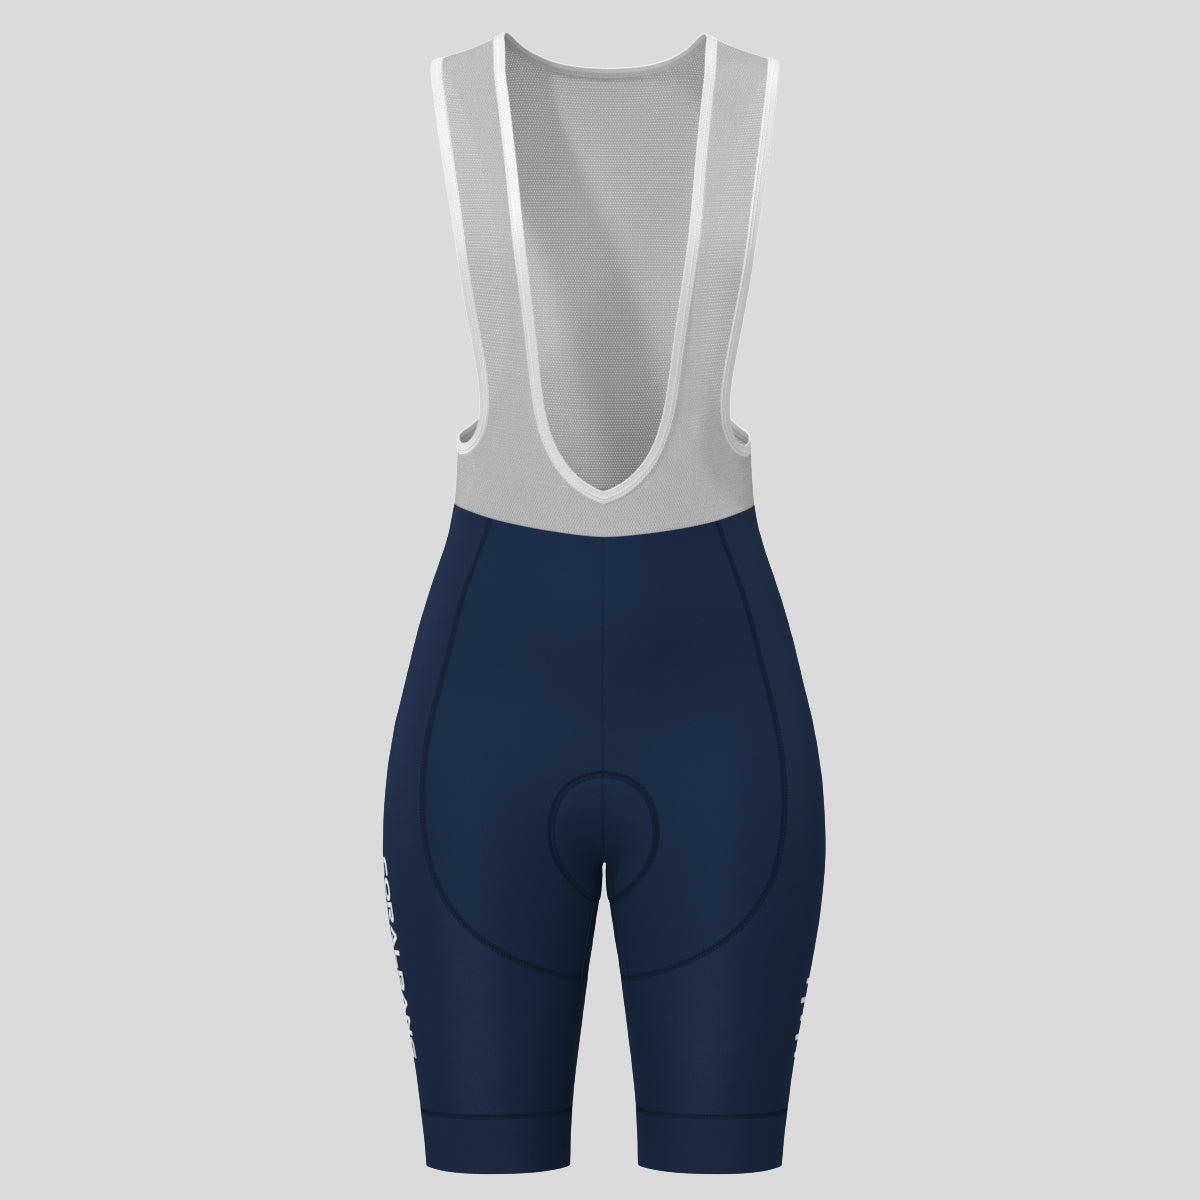 Minimal Solid Women's Bib Shorts - Navy